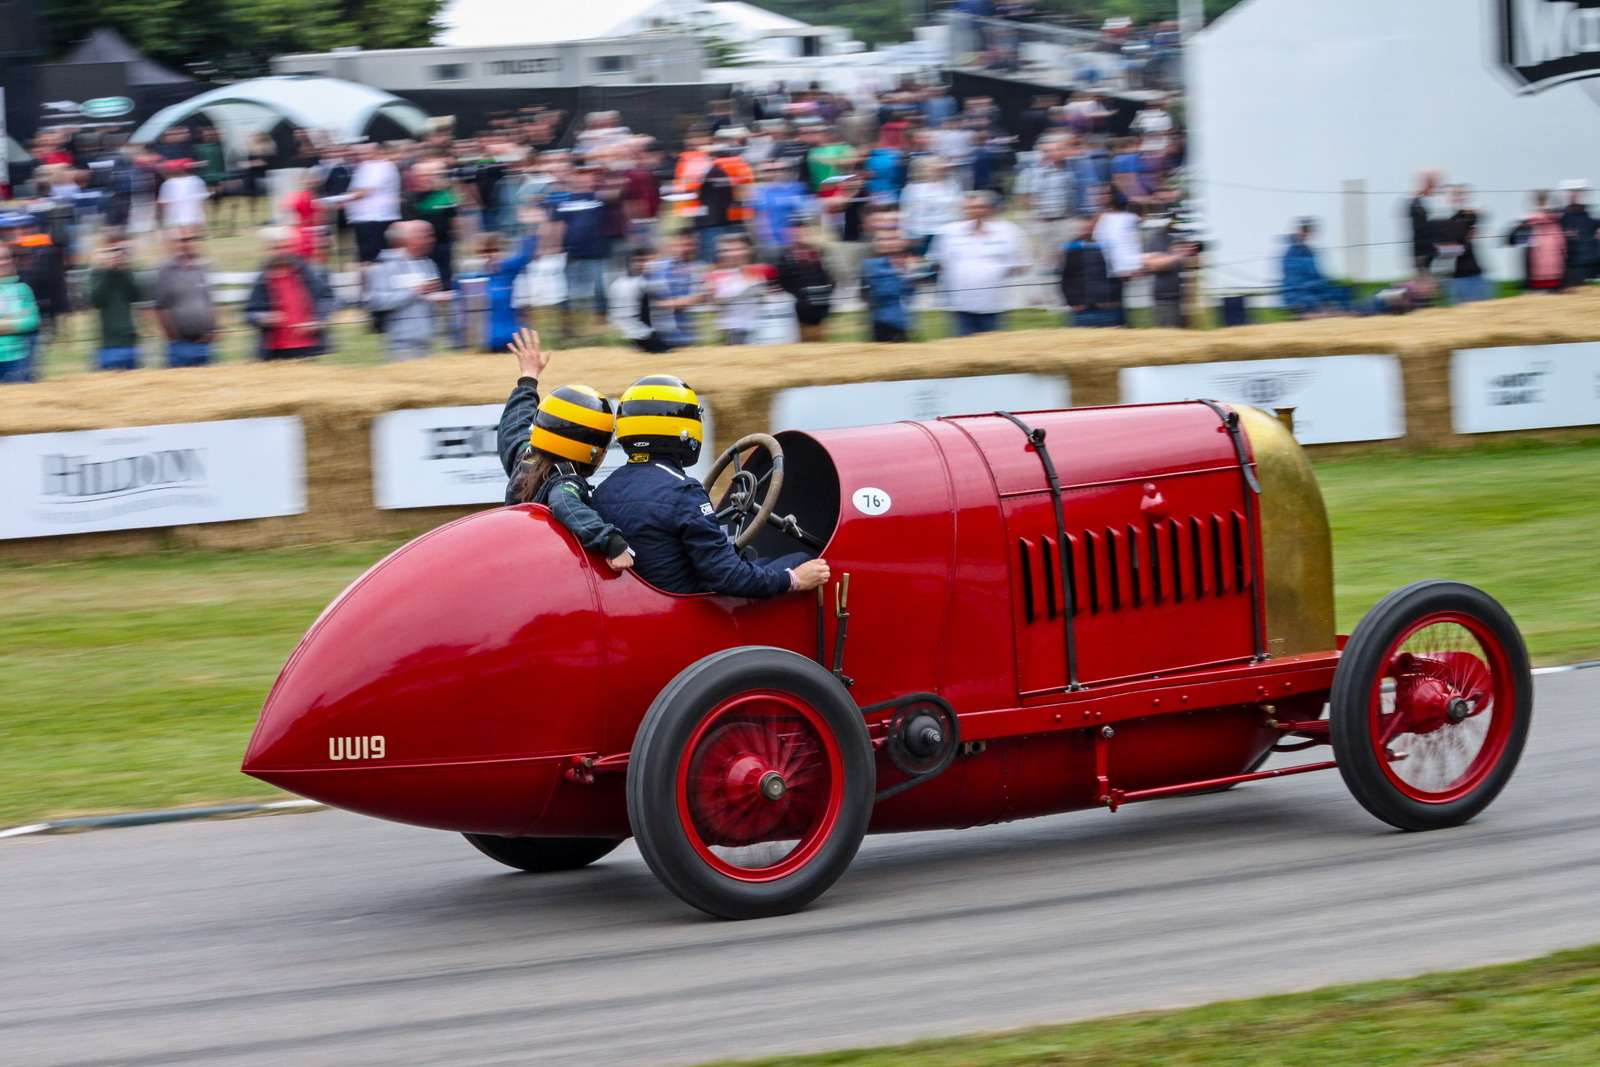 Один из постоянных участников Фестиваля скорости в Гудвуде – Beast of Turin («зверь Турина»). Это спортивный Fiat S76 1911 года с авиационным двигателем, который развивает 290 л.с. при 1900 об/мин при рабочем объеме (держитесь крепче) 28,4 литра. В 1910 году построили еще одну такую машину, чтобы превзойти в скорости машины марки Benz. И в заездах на одну милю по песчаному пляжу в Солтберн-бай-Си «зверь» под управлением Пьетро Бордино показал 185,6 км/ч. Два года спустя был установлен новый рекорд – 216 км/ч, но его не признали. Во время Первой мировой войны обе машины пропали. Одну из них (точнее, то, что от нее осталось) нашли в Австралии в 2002 году и перевезли в Англию для реставрации. Результат перед вами.